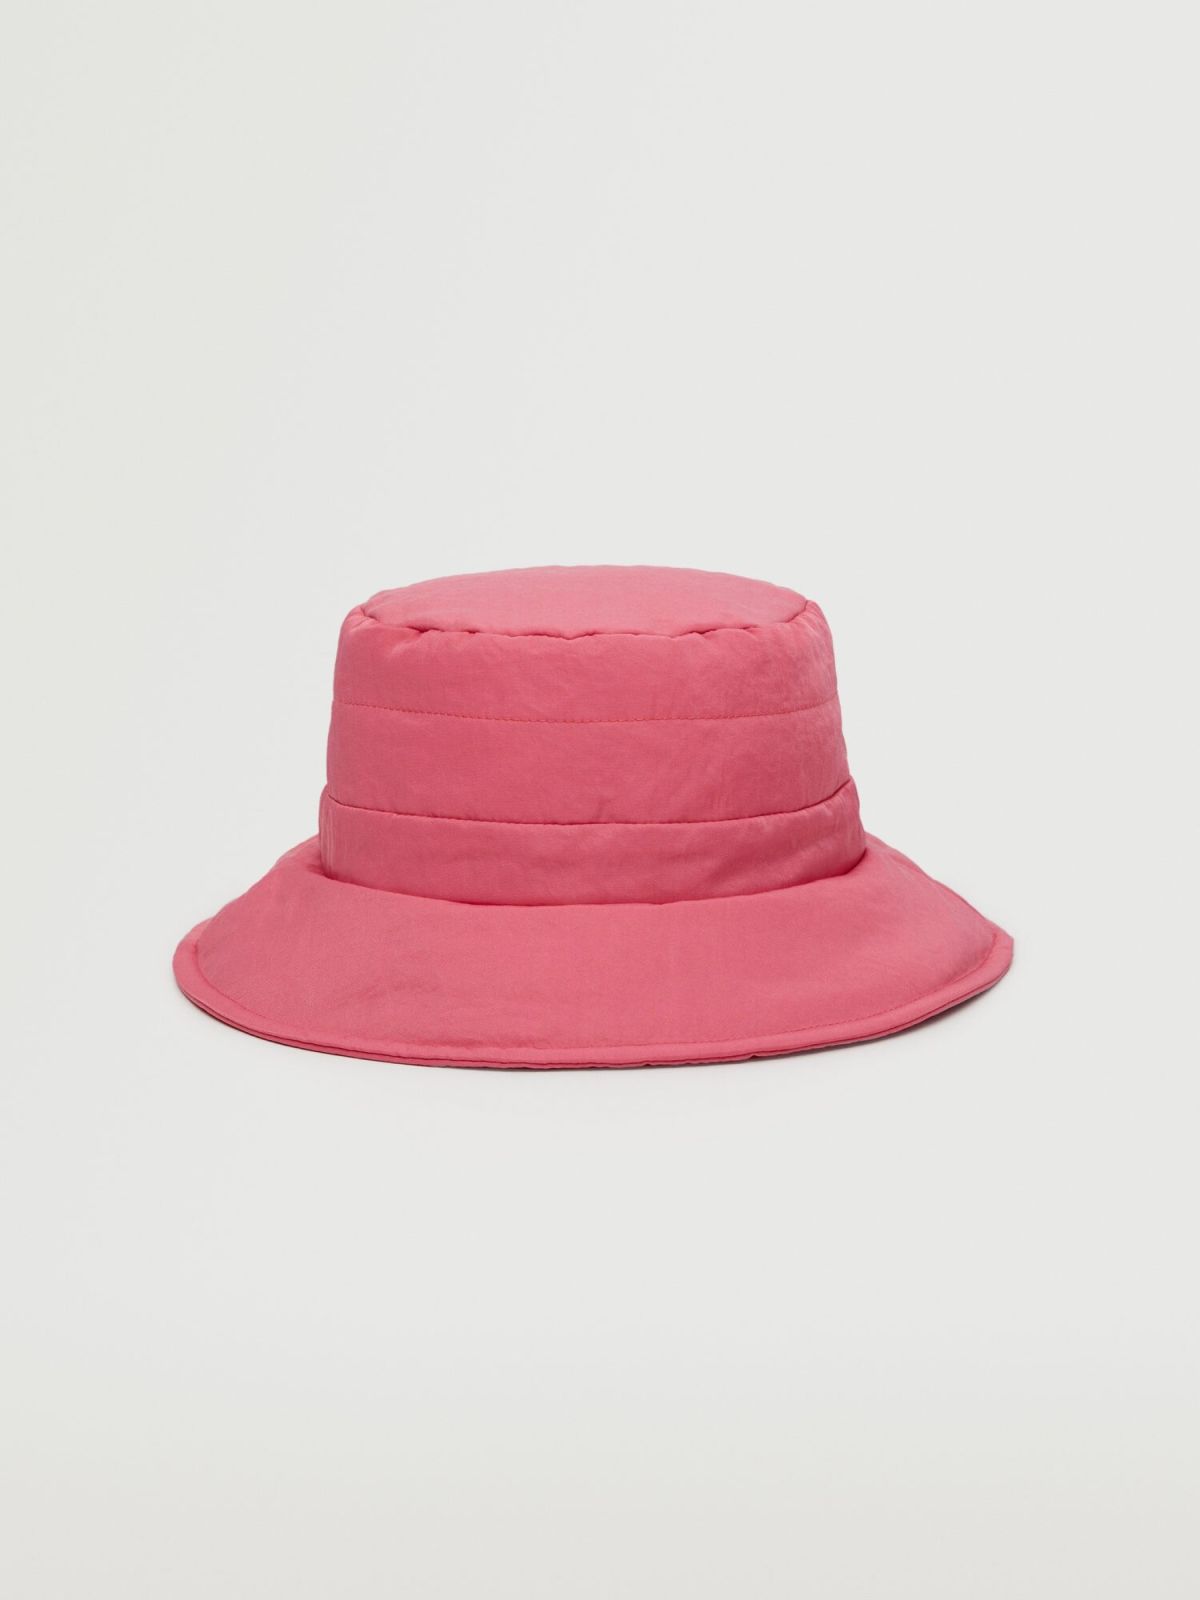  כובע באקט קווילט / נשים של MANGO